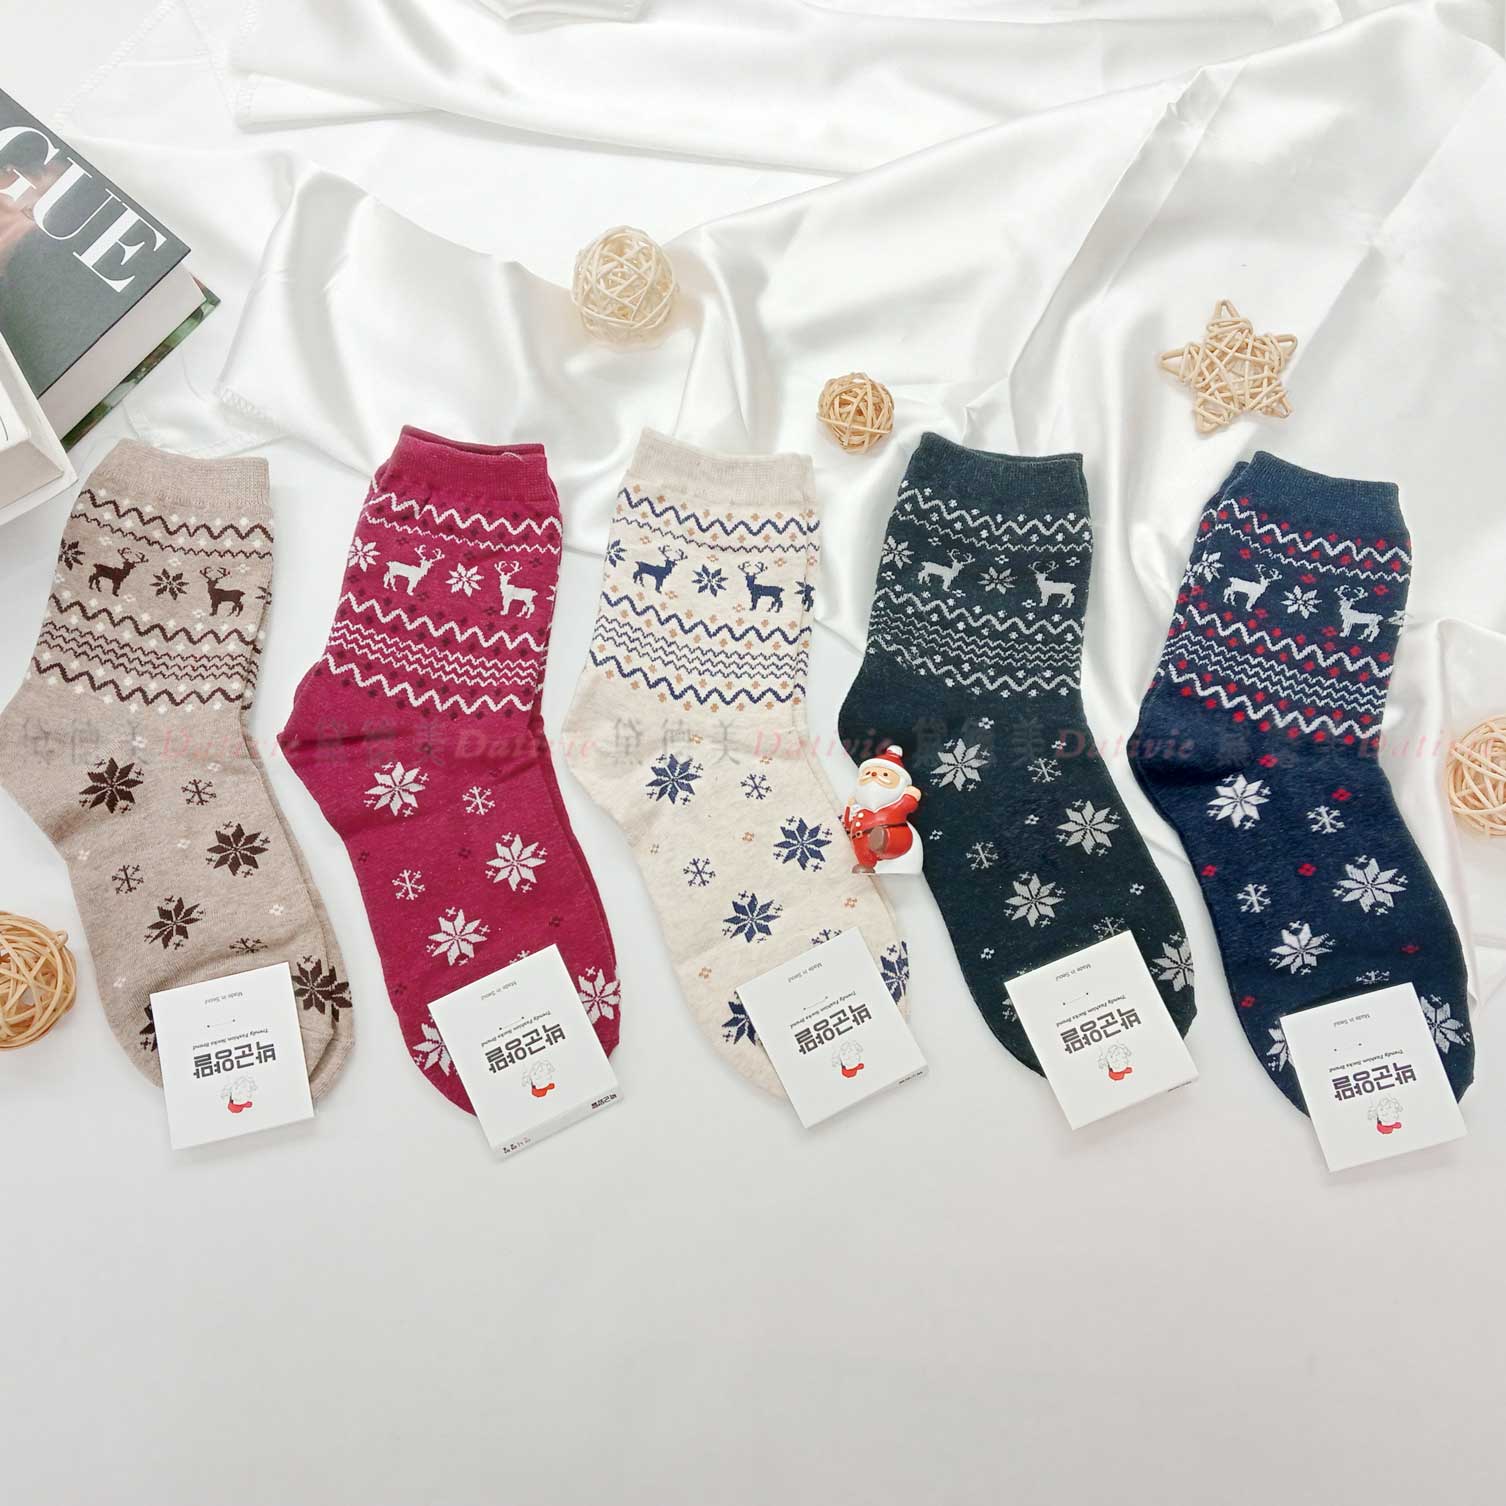 韓國襪 經典 聖誕節 麋鹿 雪花 五色 中統襪